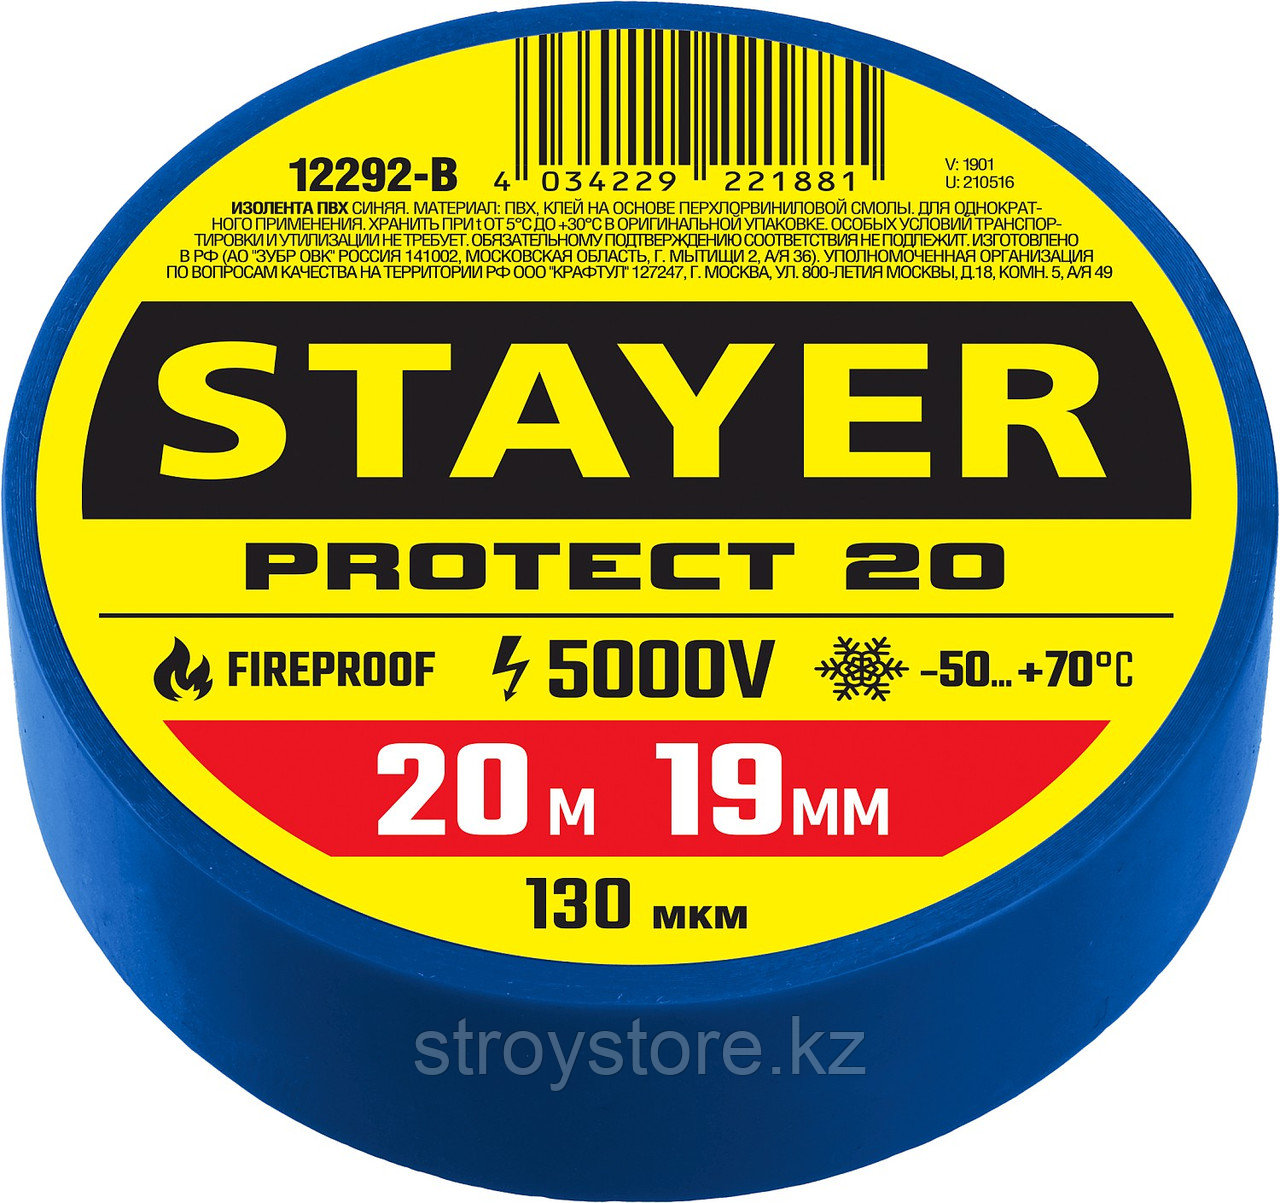 STAYER Protect-20 19 мм х 20 м синяя, Изоляционная лента ПВХ, PROFESSIONAL (12292-B), фото 1